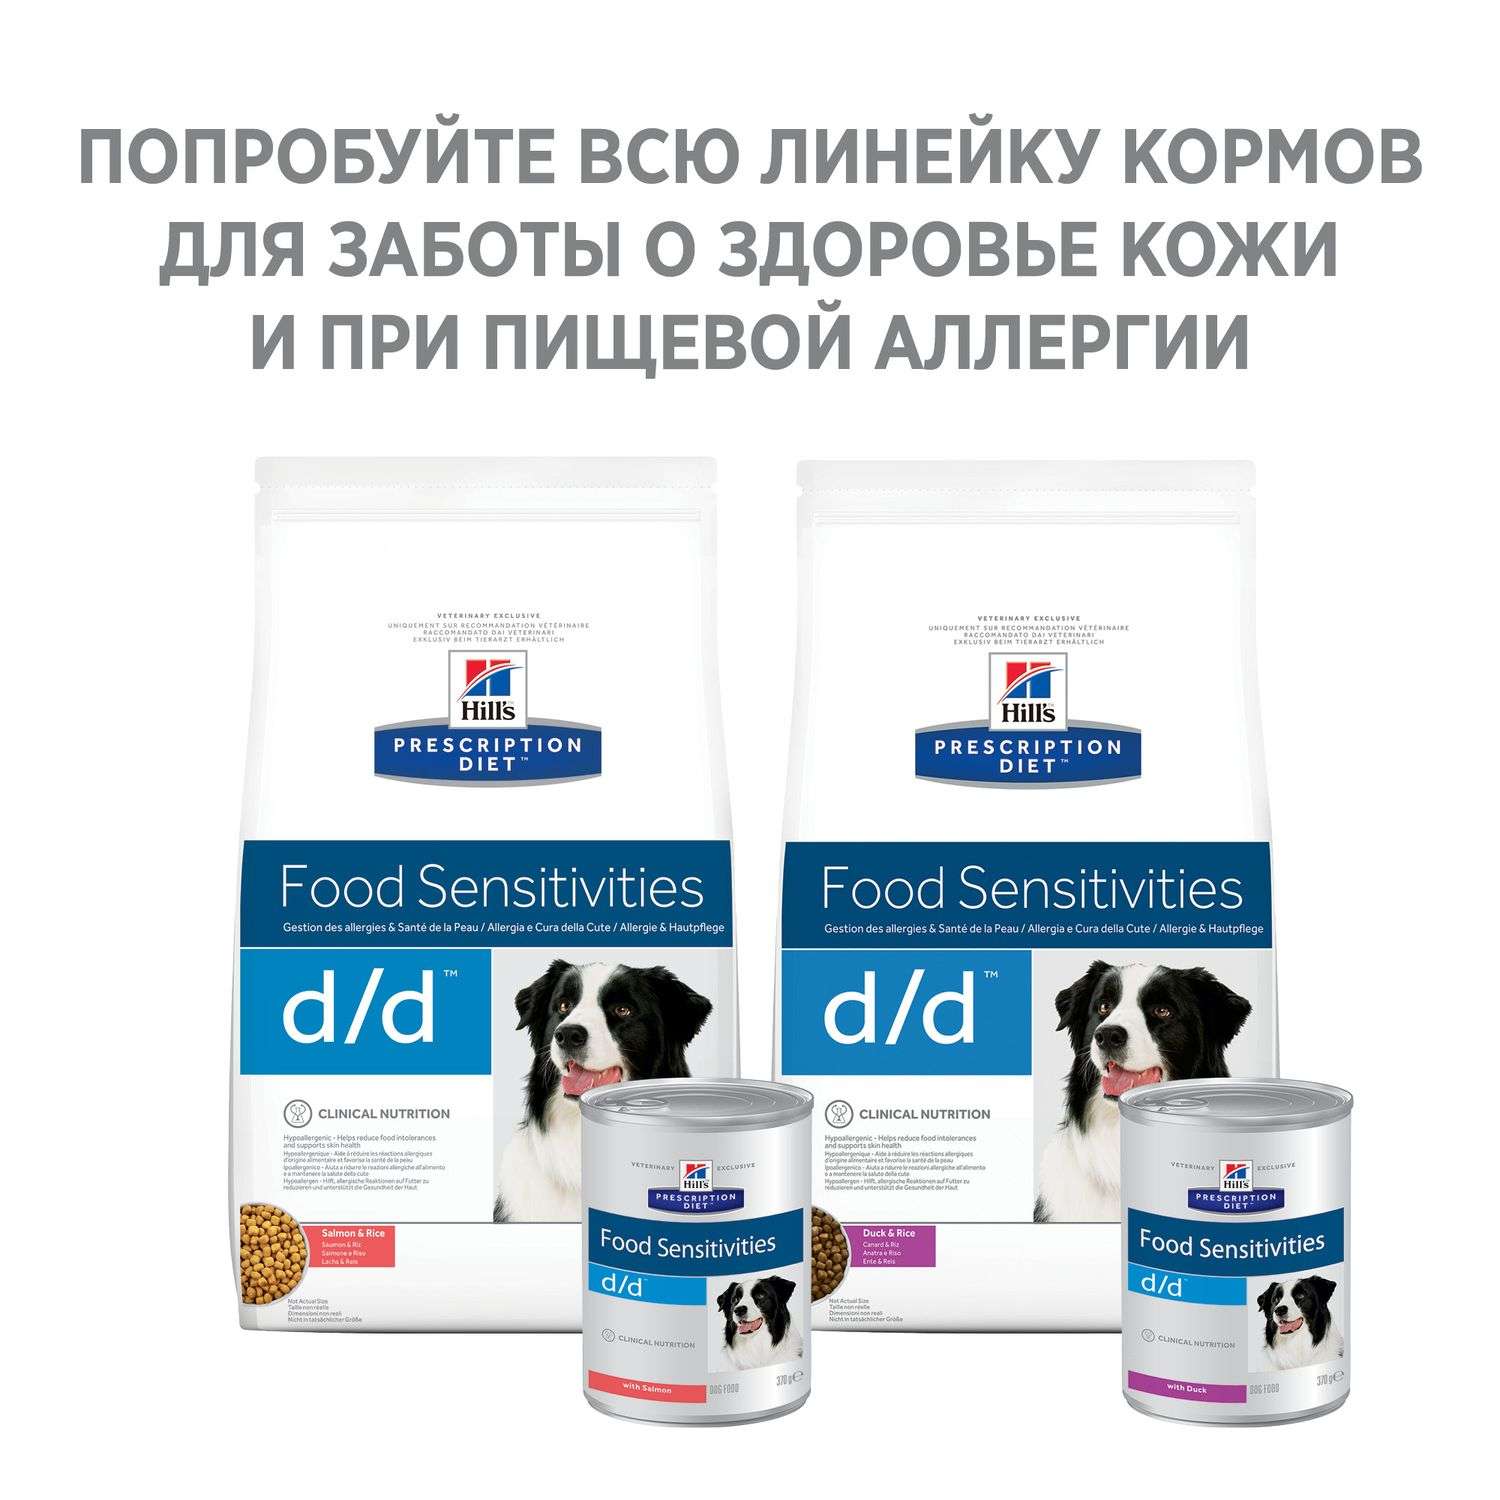 Корм для собак HILLS 370г Prescription Diet d/d Food Sensitivities для кожи при аллергии и заболеваниях кожи с уткой консервированный - фото 5